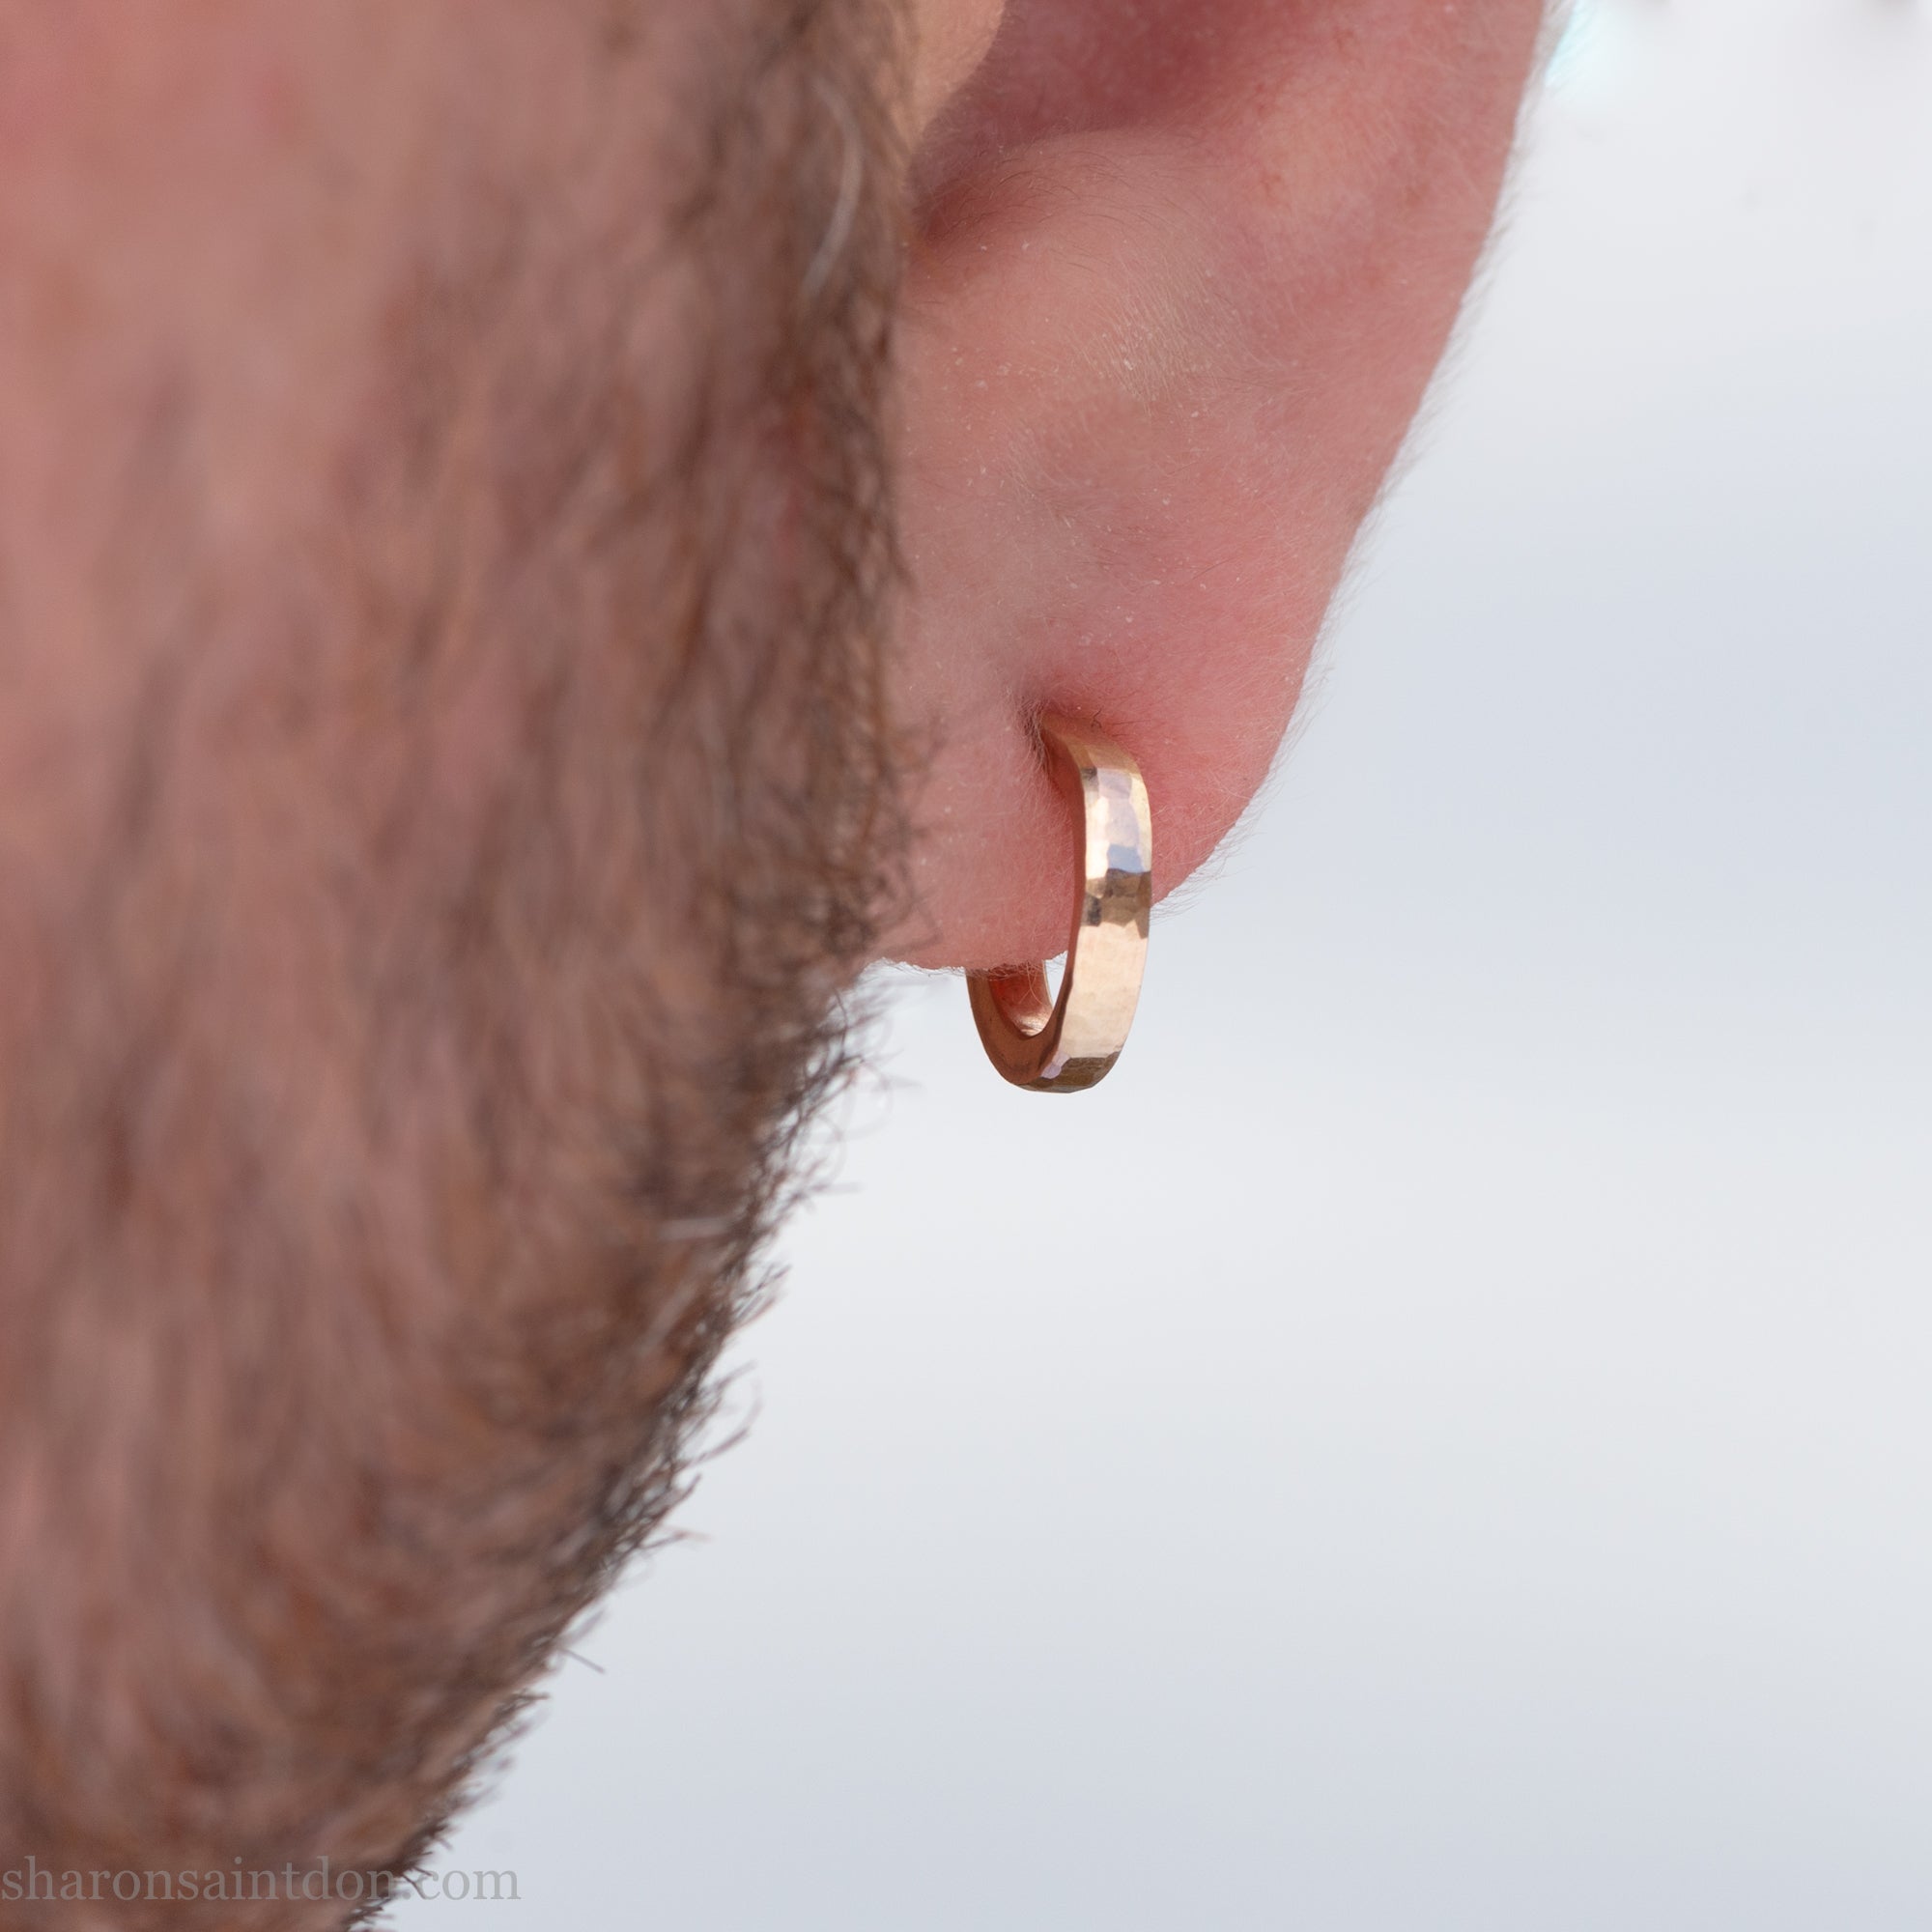 Small 14k Yellow Gold Wide Hinged Huggie Hoop Earrings